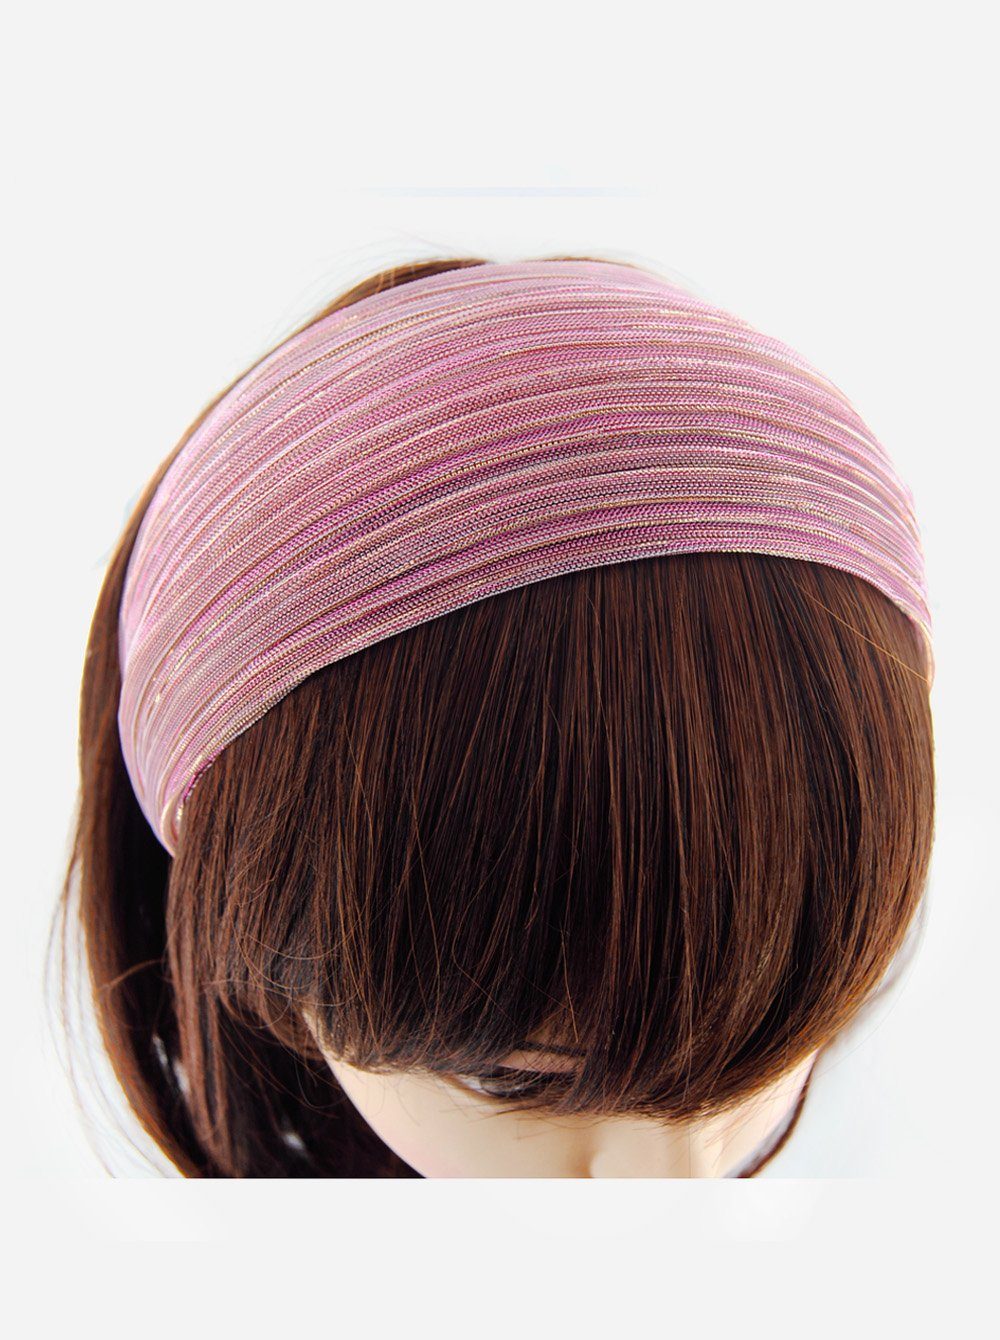 axy Haarreif Breiter Haarreif auffallenden Haarreif Haarreifen mit Haarband Breiter in Tuchoptik, Pink Glitzerfäden Glitzerfäden Damen mit